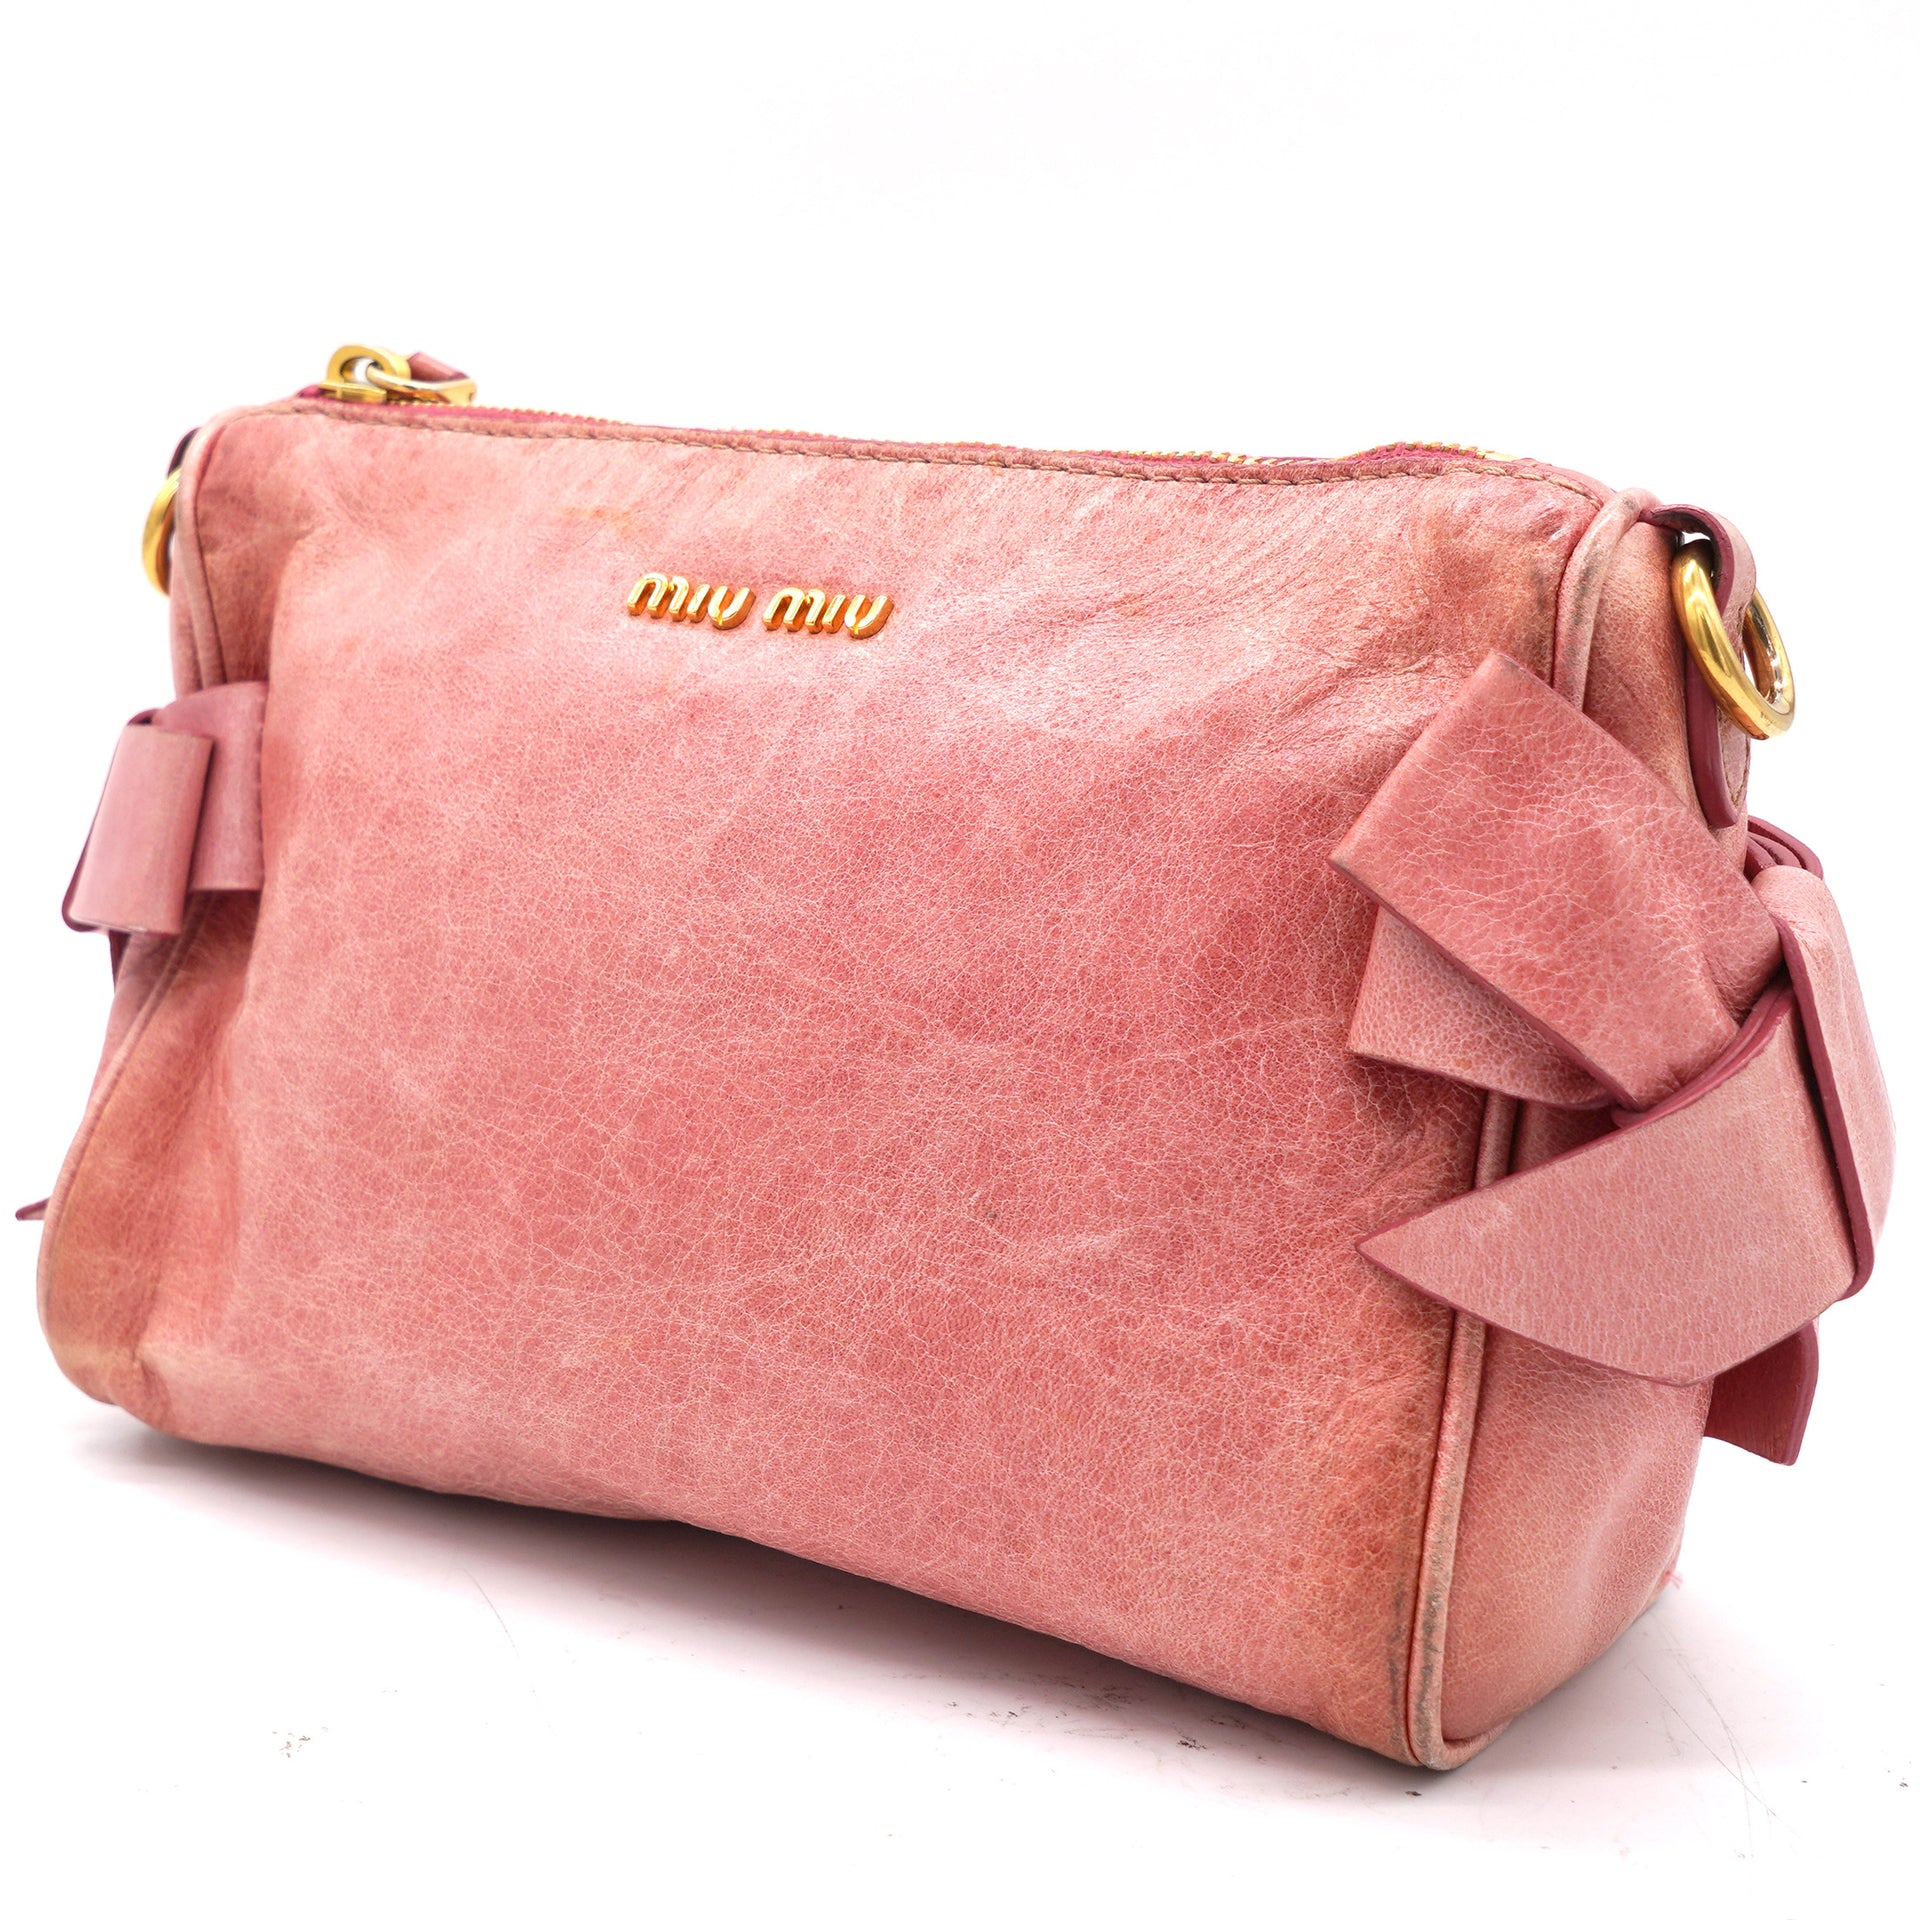 Miu Miu - Vitello Shine Bow Small Shoulder Bag Poudre